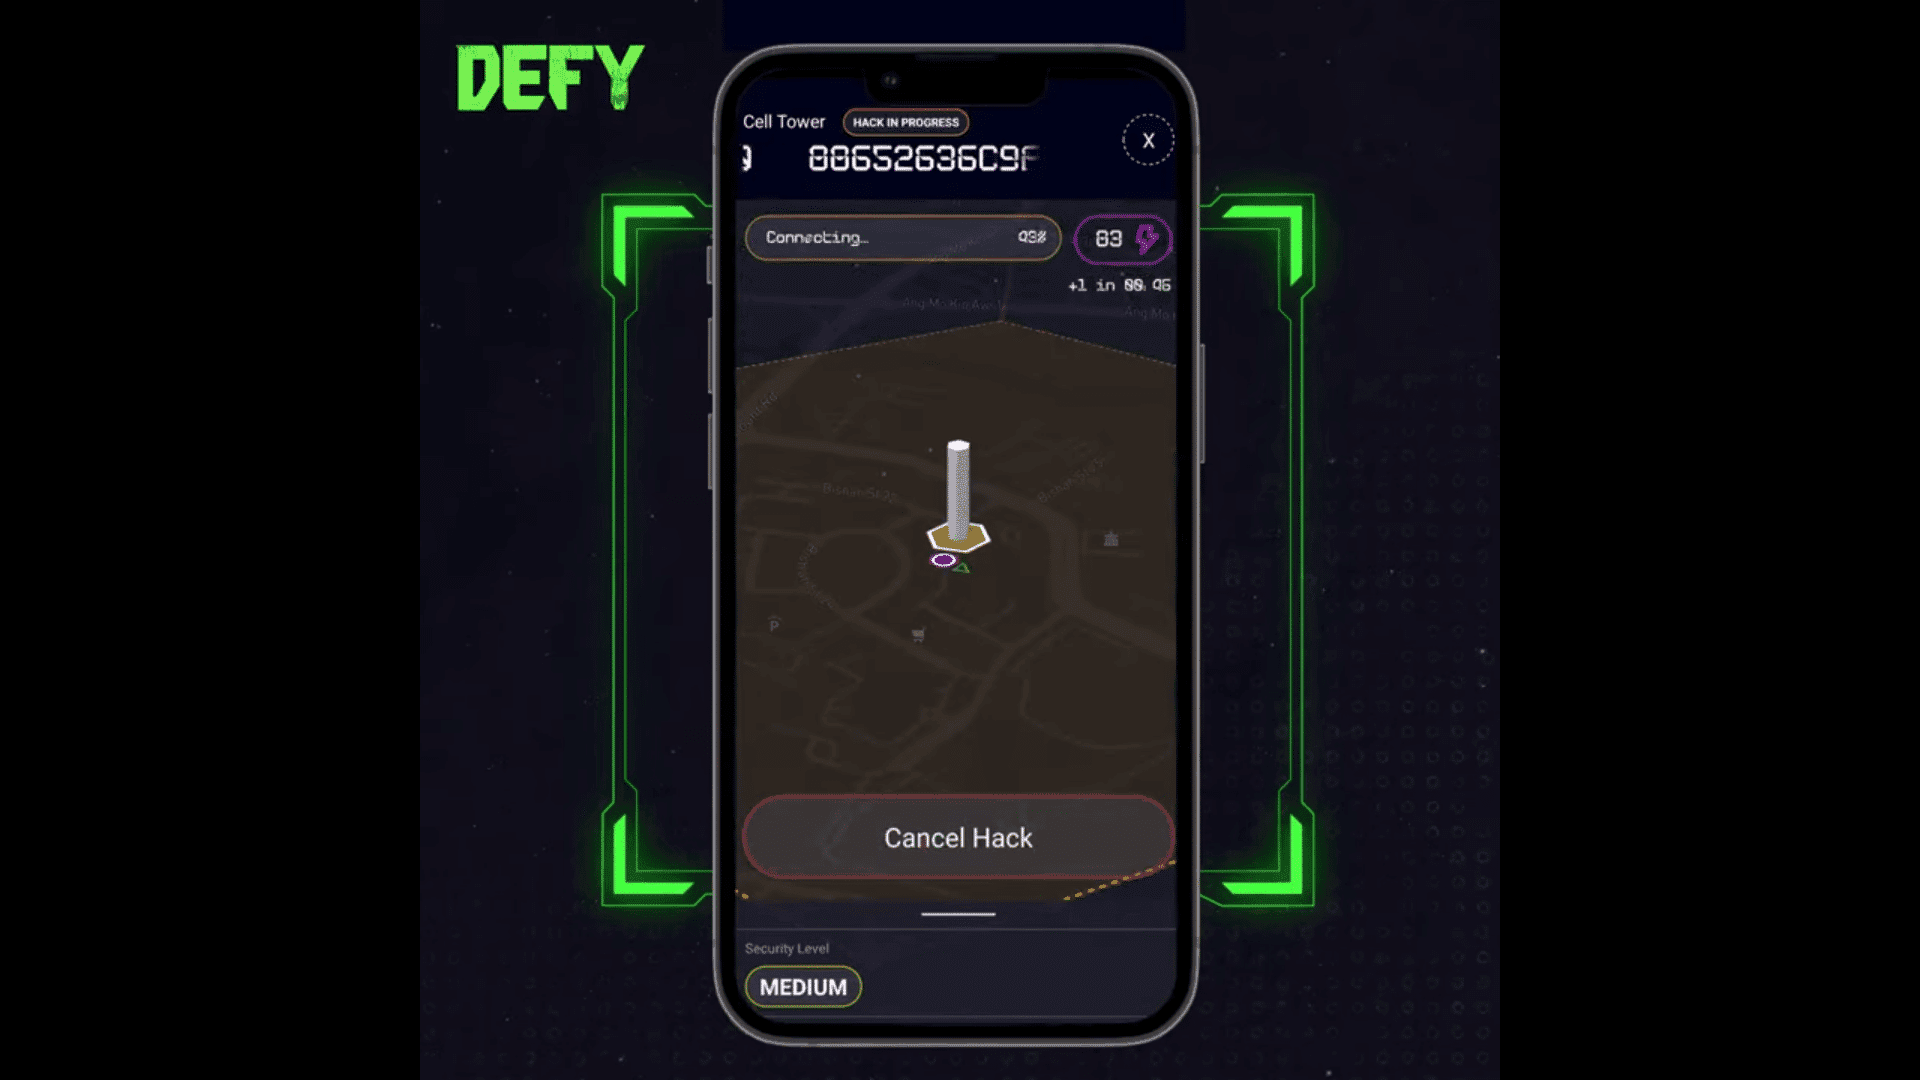 DEFY est un jeu mobile qui combine des éléments des mondes virtuel et physique pour offrir une expérience métaverse immersive.